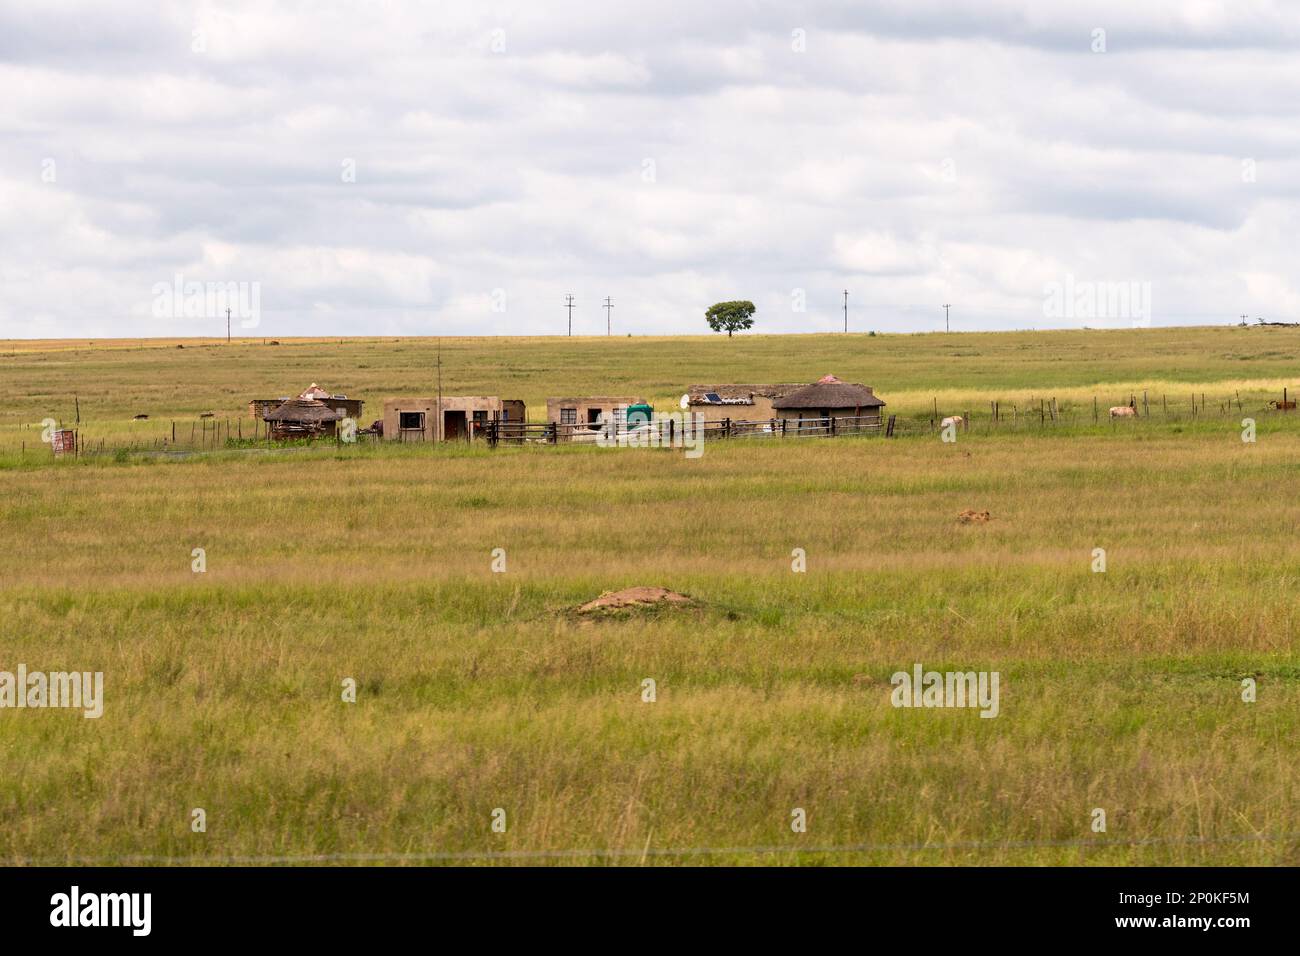 Landwirtschaftliche Landschaft und Szene eines typischen ländlichen, traditionellen afrikanischen Kleinbetriebs oder Bauernhofs in Südafrika mit strohgedeckten Gebäuden und Nutztieren Stockfoto